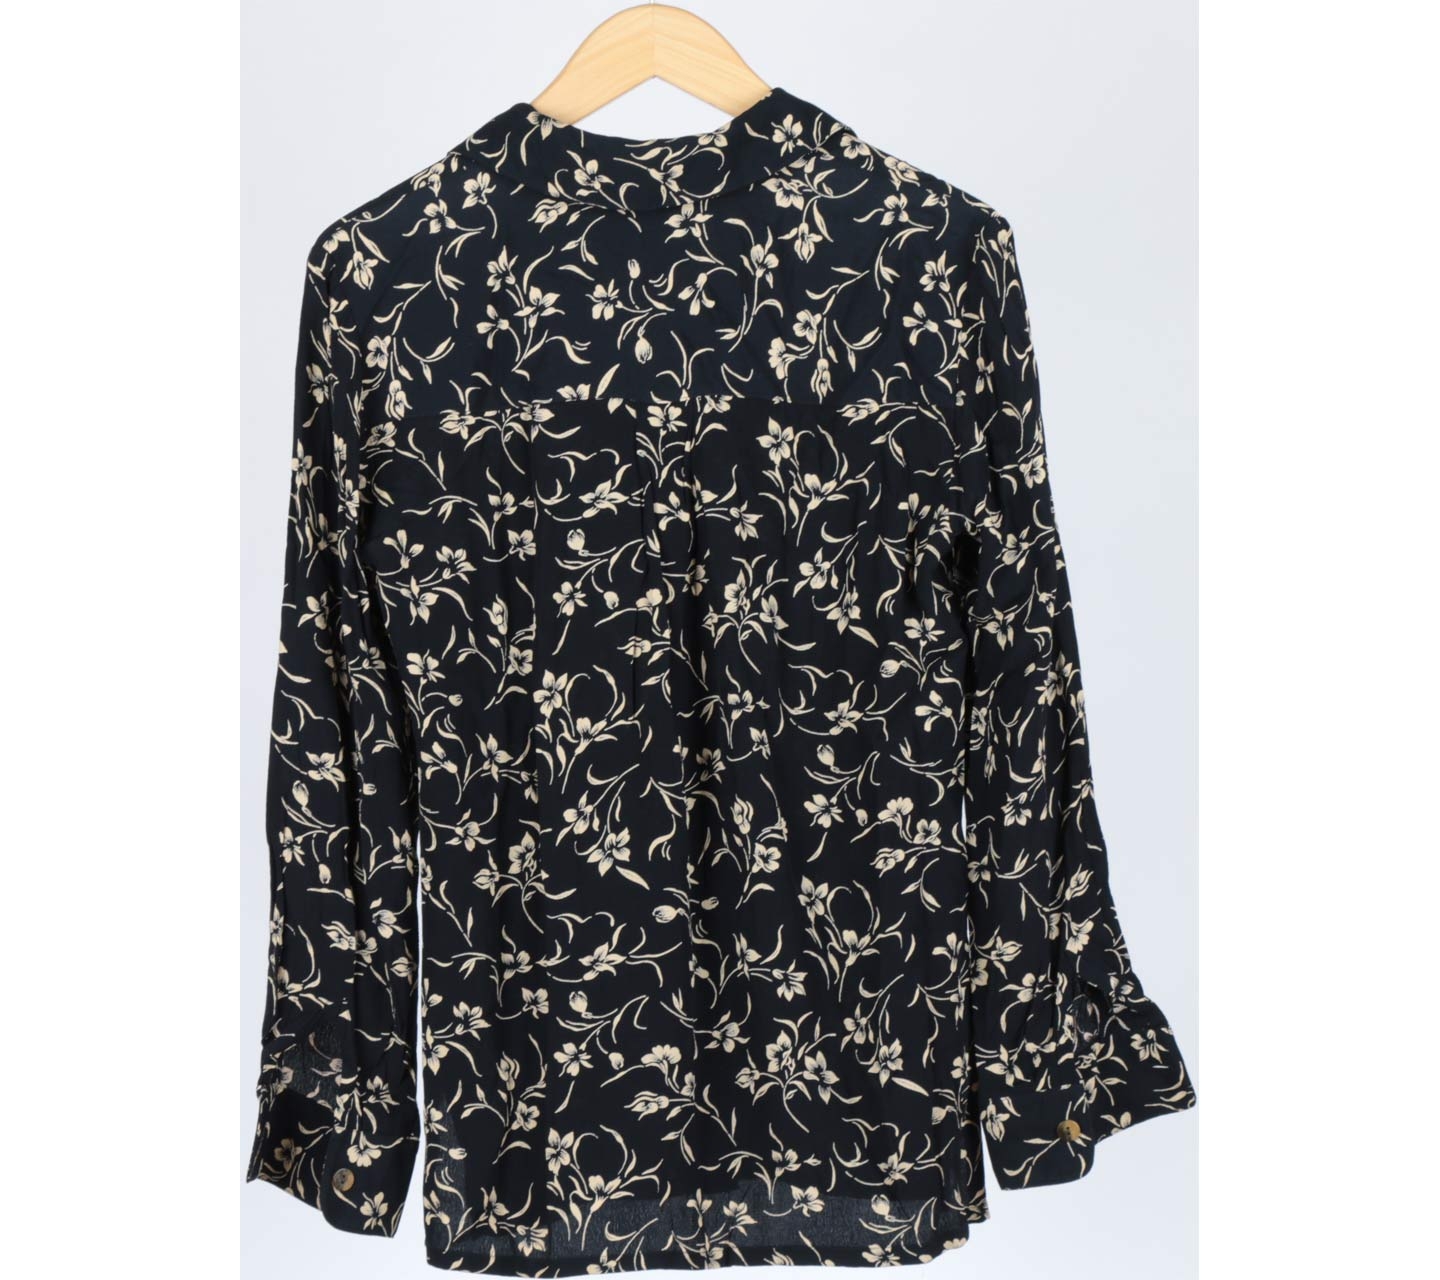 Perri Cutten Black And Cream Floral Shirt